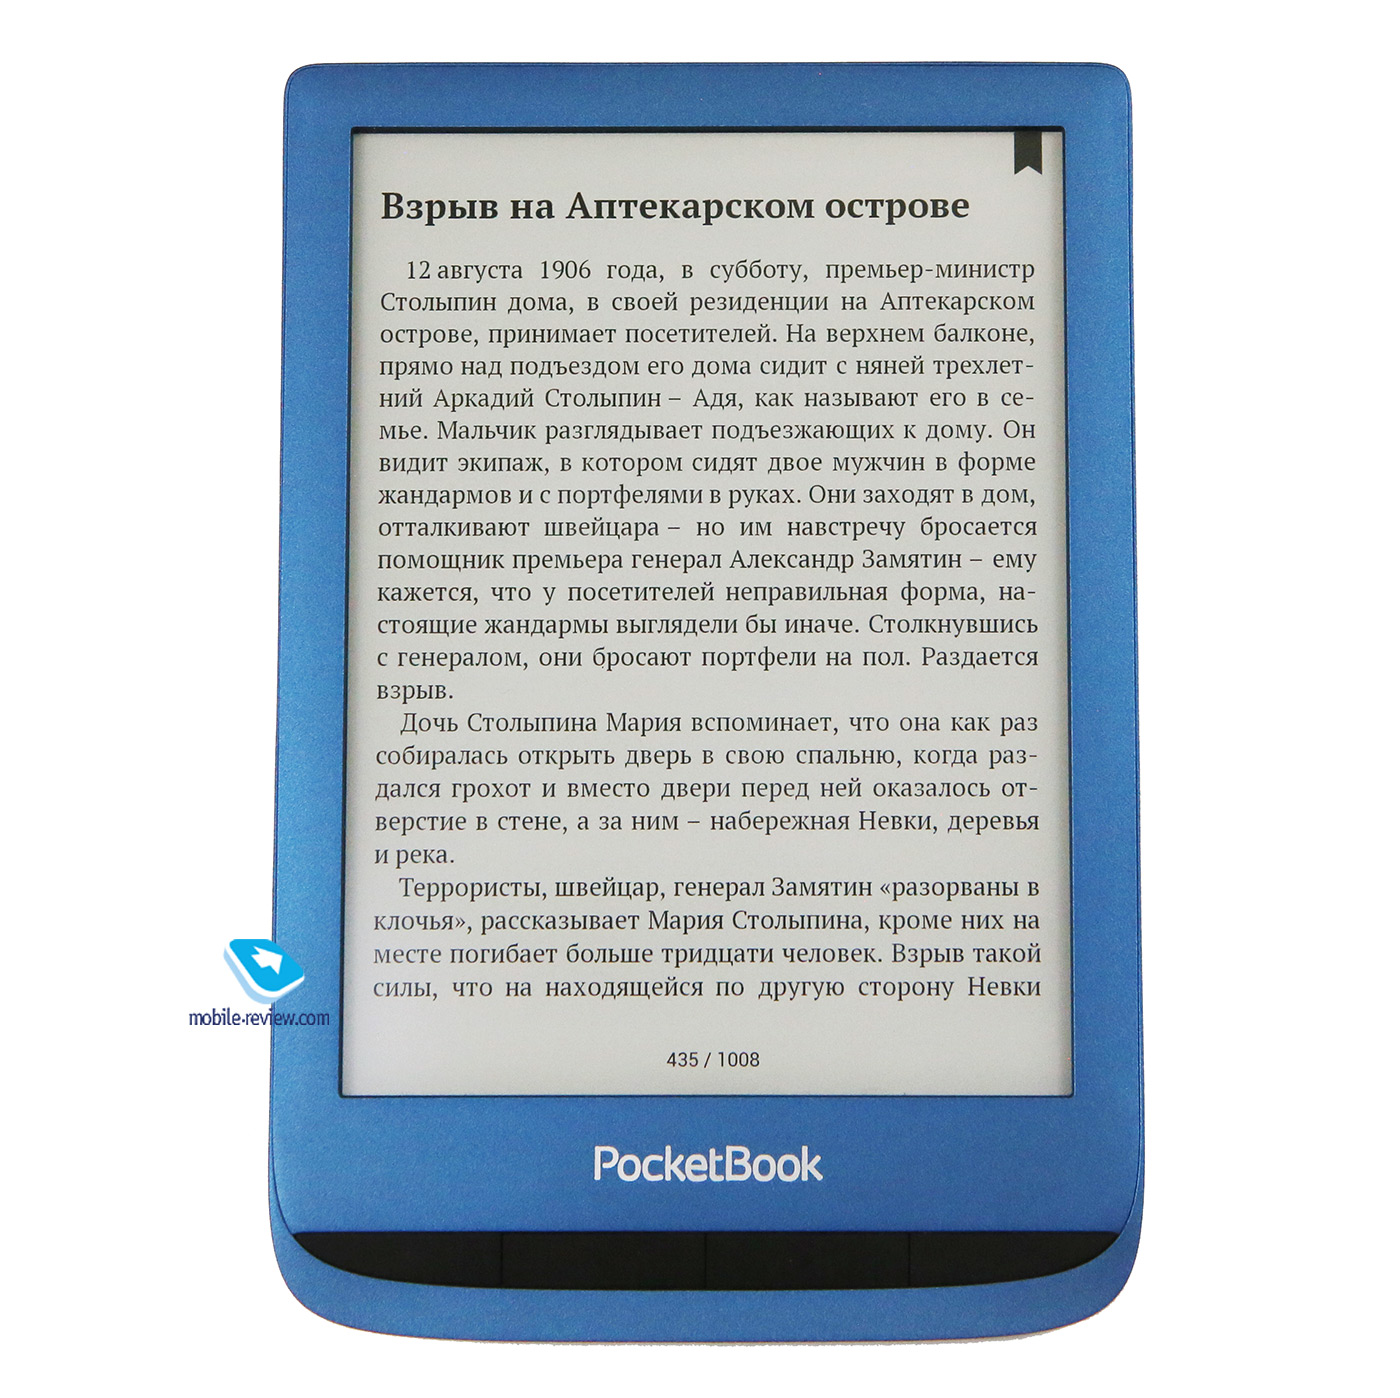    PocketBook 632/632 Aqua